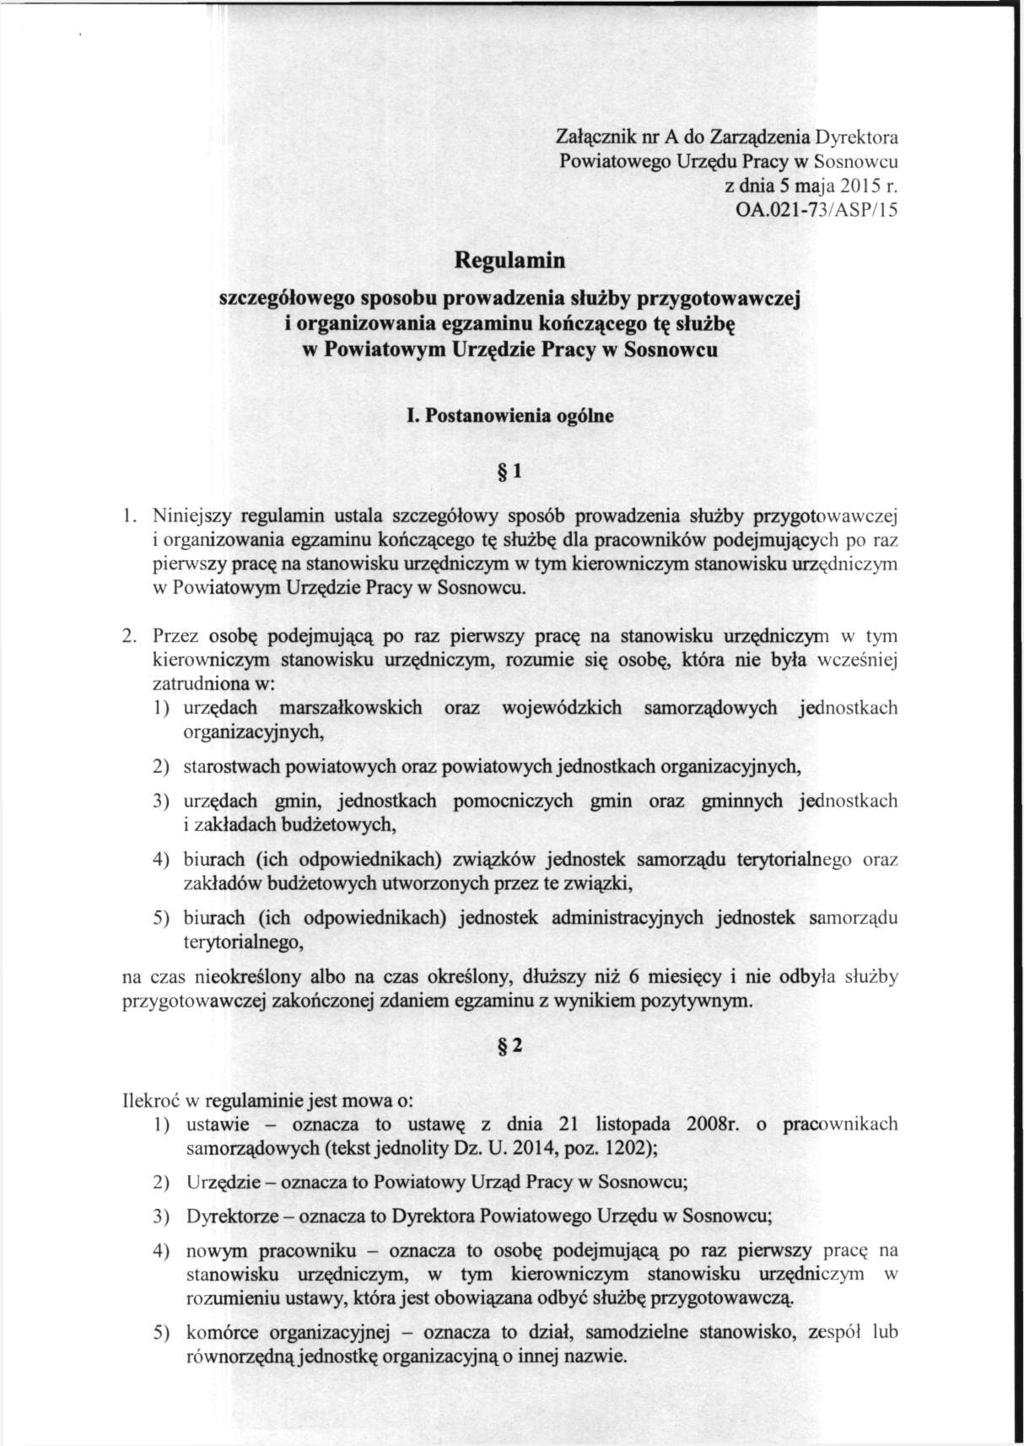 Regulamin Załącznik nr A do Zarządzenia Dyrektora Powiatowego Urzędu Pracy w Sosnowcu z dnia 5 maja 2015 r. OA.